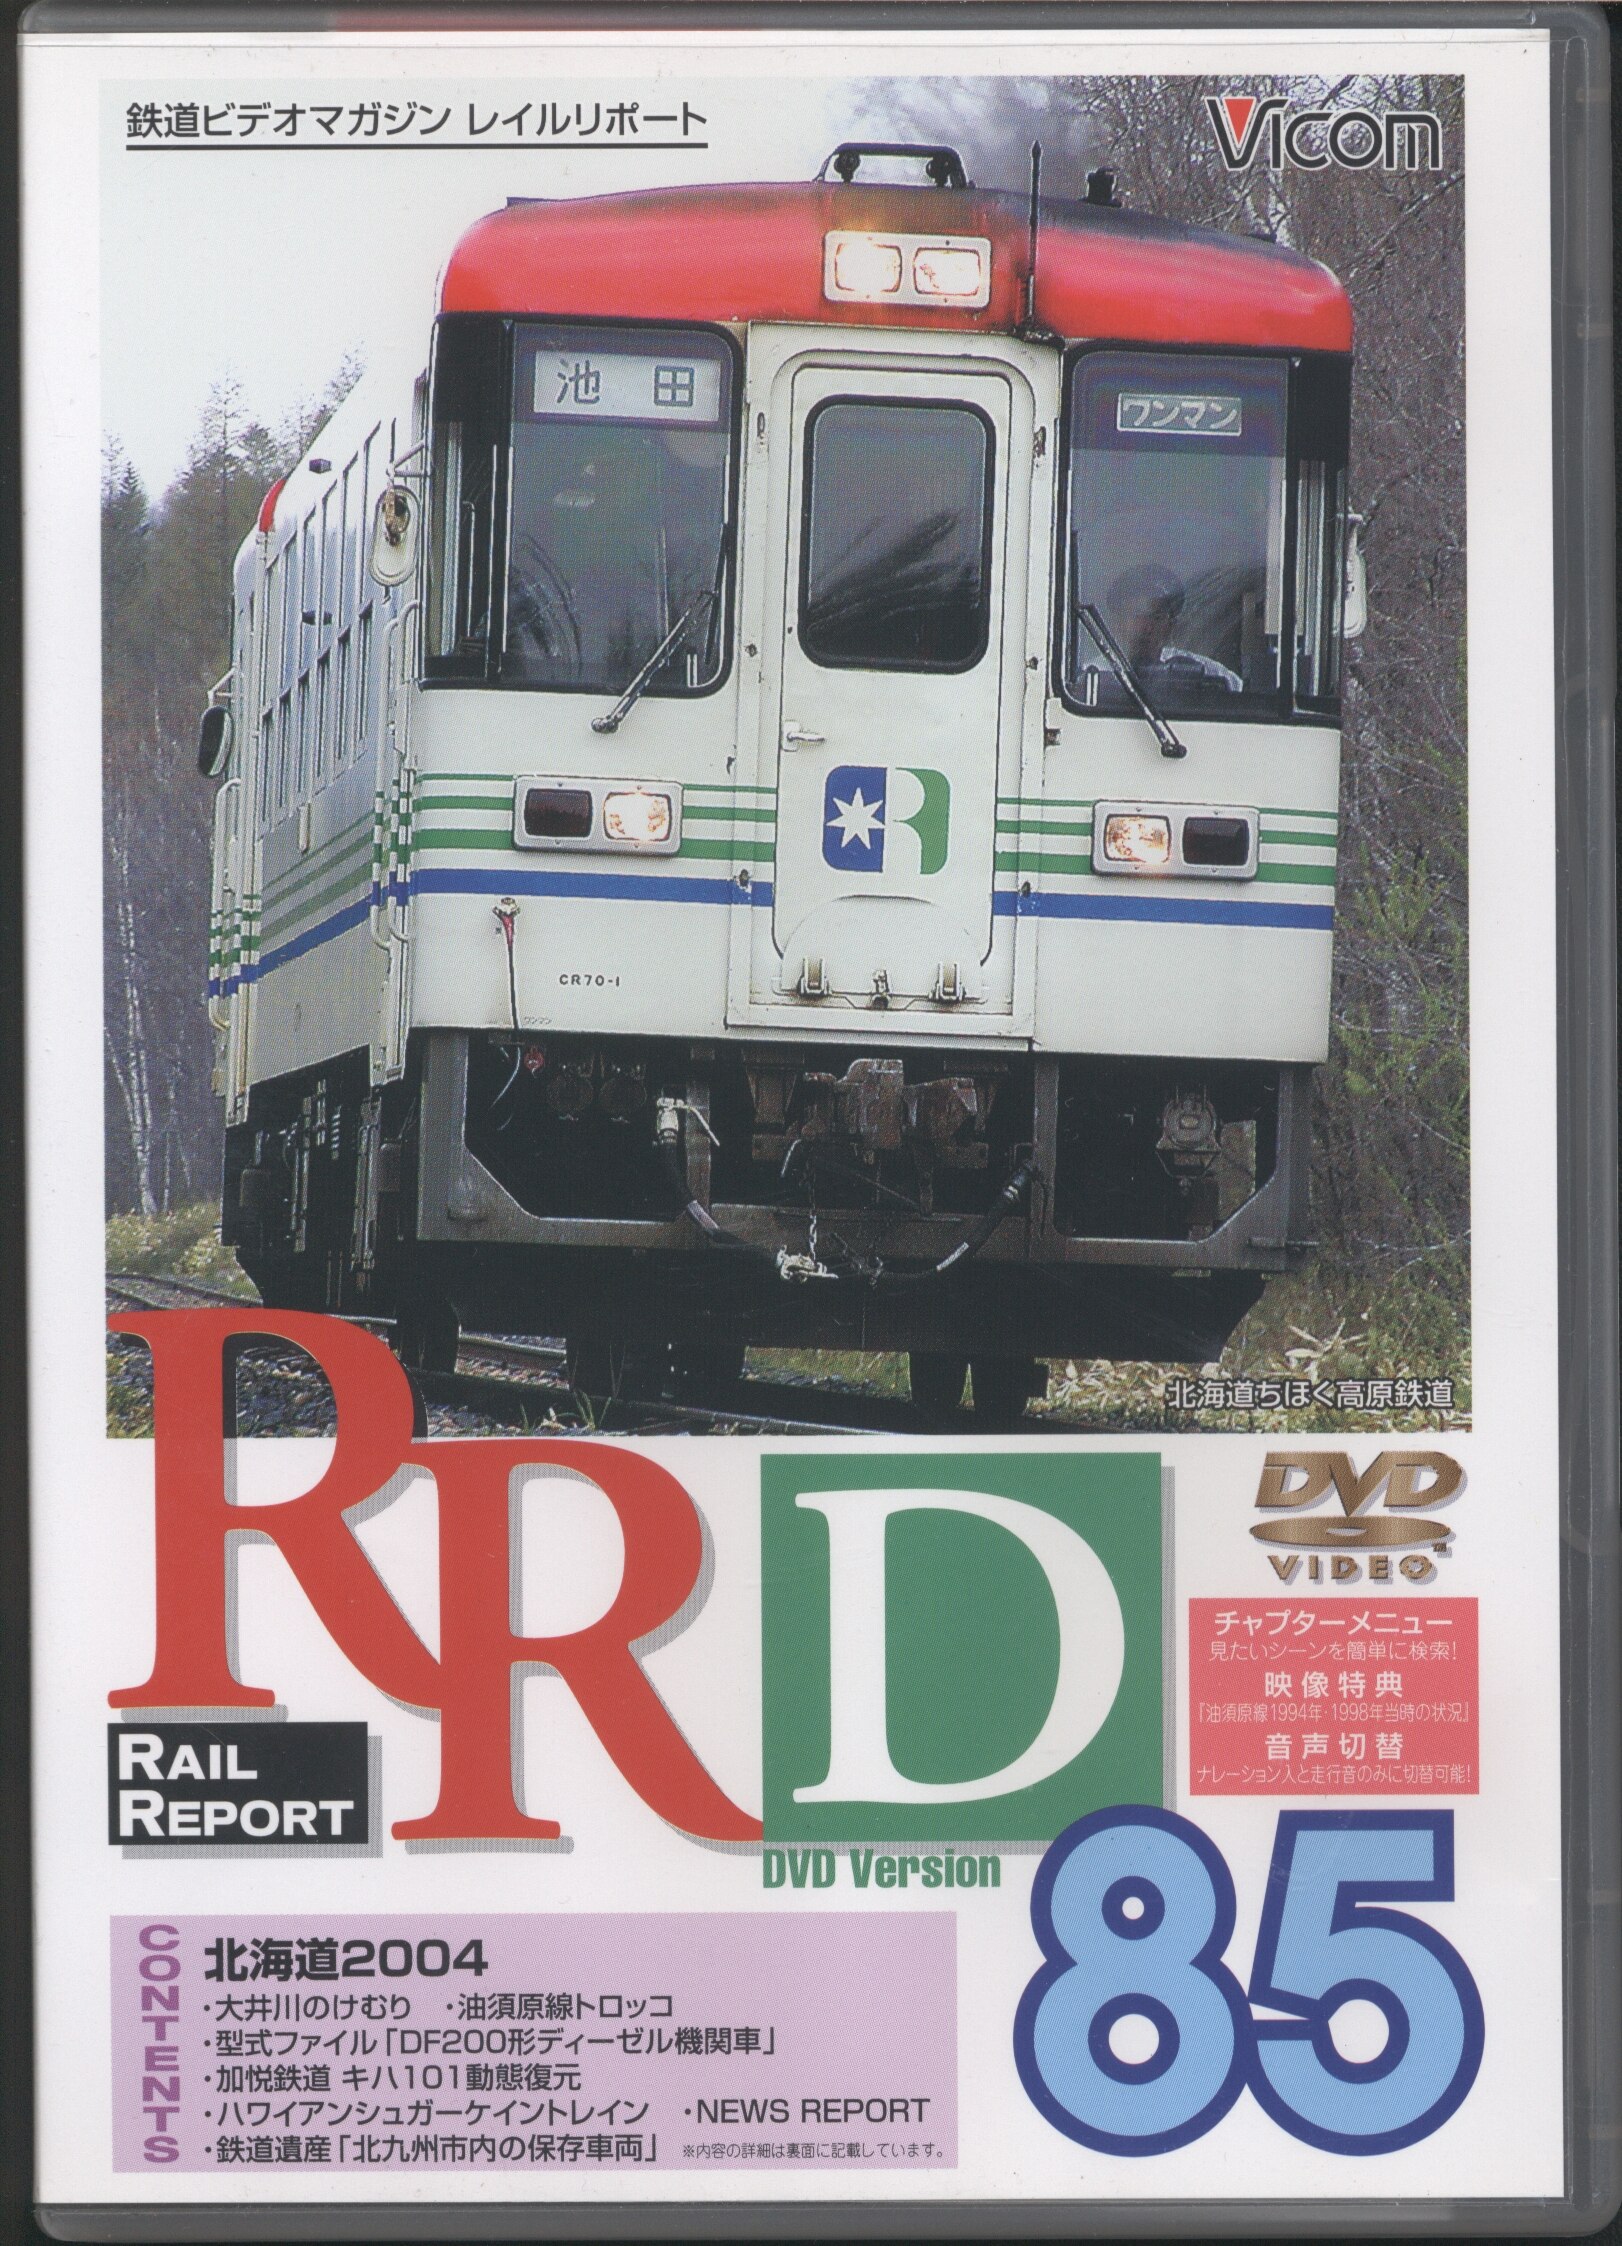 その他DVD 鉄道/85 レイルリポート 85号DVD版 - 趣味・教養